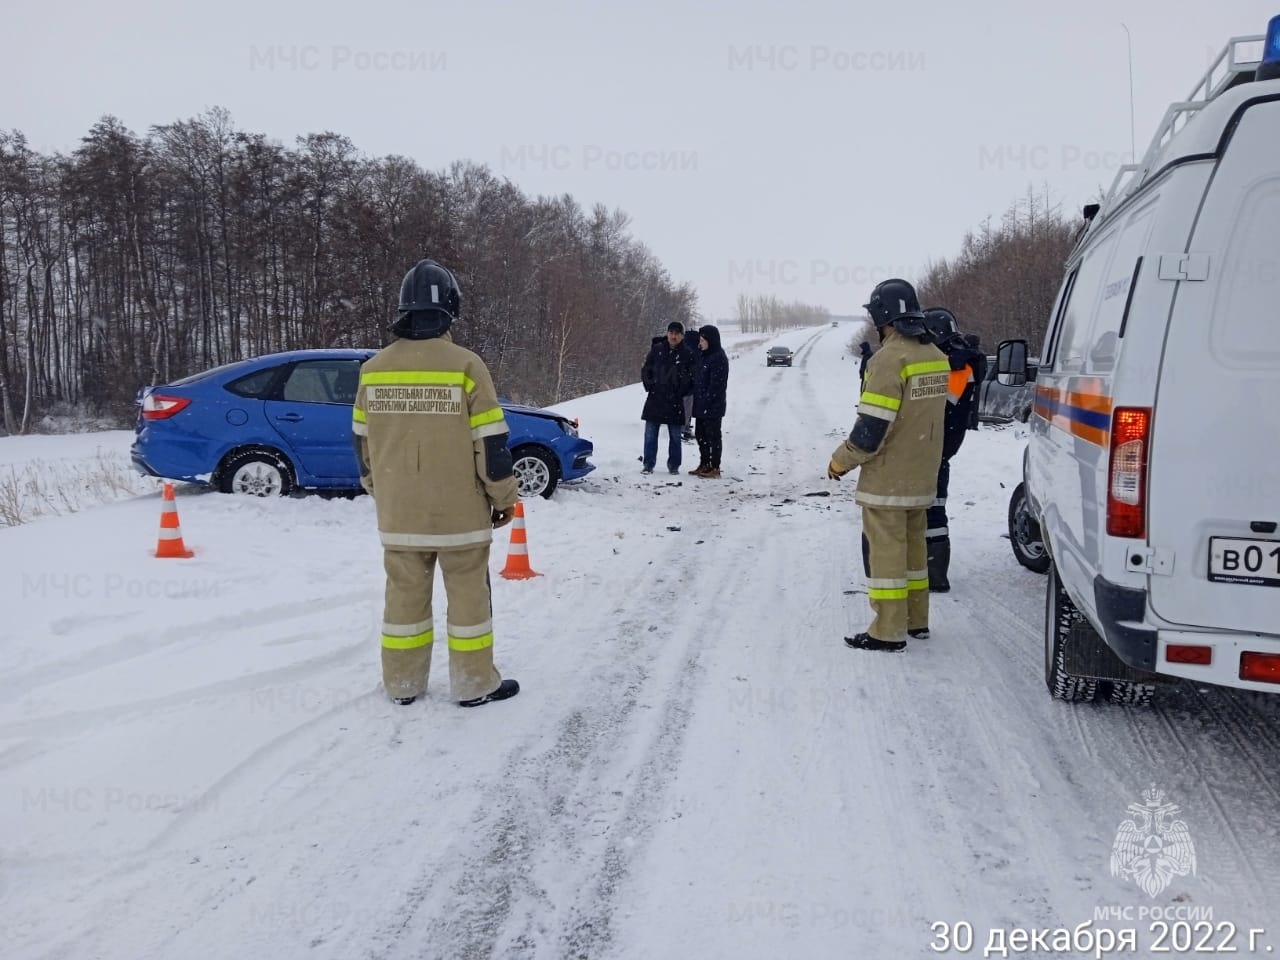 При ДТП в Башкирии погиб 1 полицейский из Оренбурга и двое его коллег пострадали